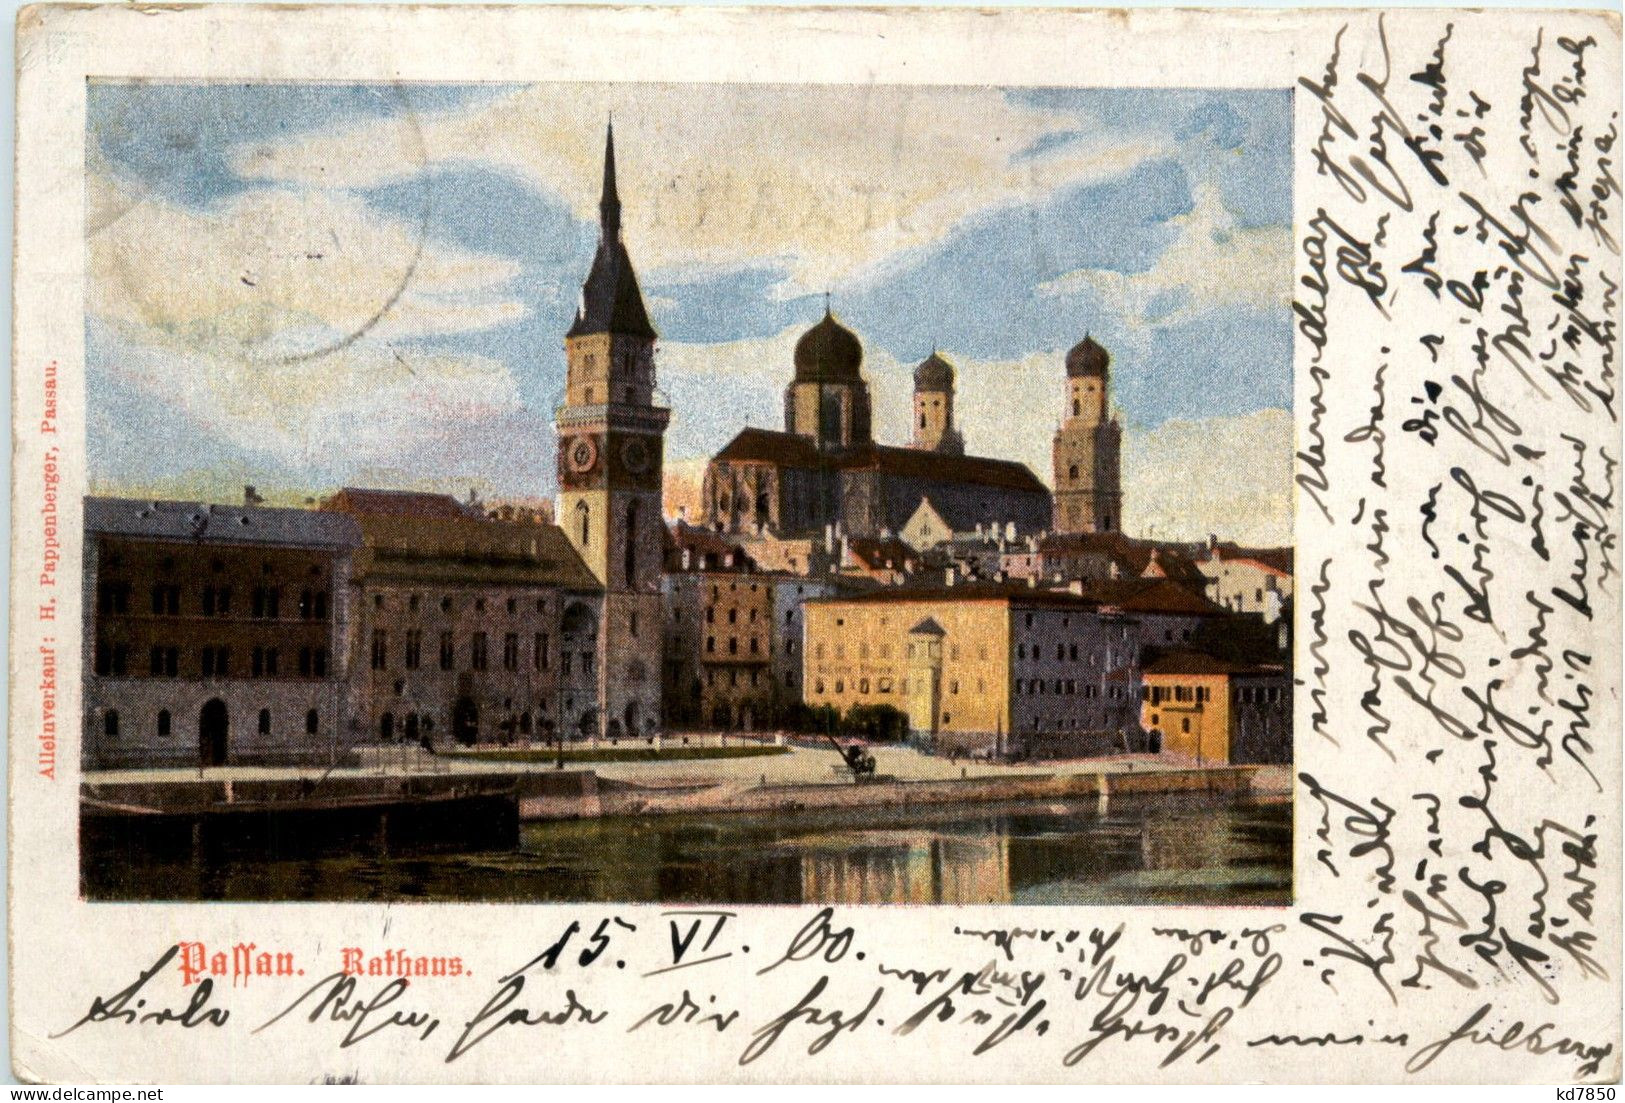 Passau/Bayern - Passau, RaTHAUS - Passau